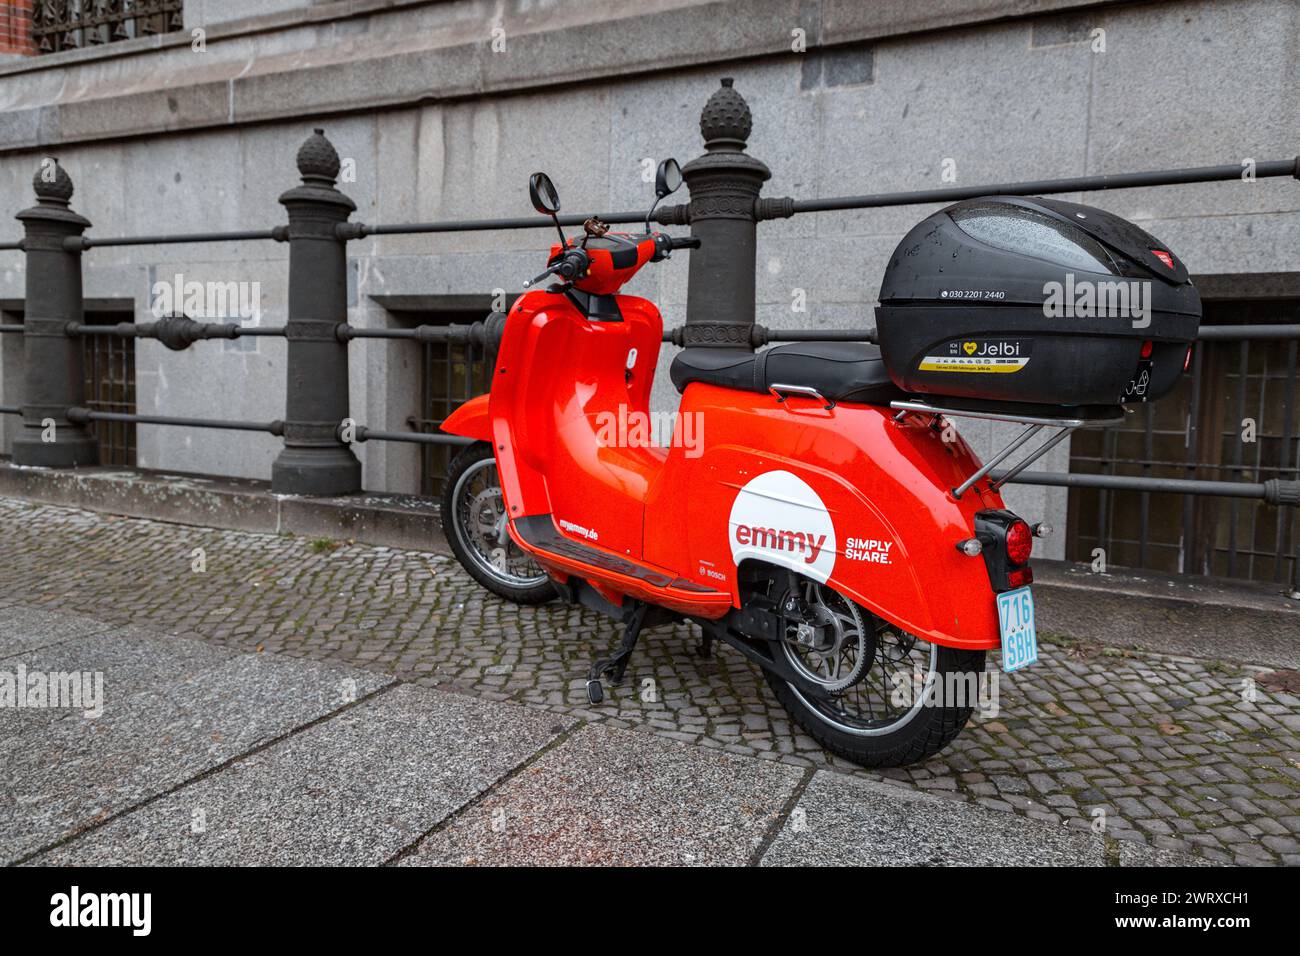 Berlin, Germany - 16 DEC 2021: Emmy rental motorbike parked on a sidewalk in Berlin, Germany. Stock Photo